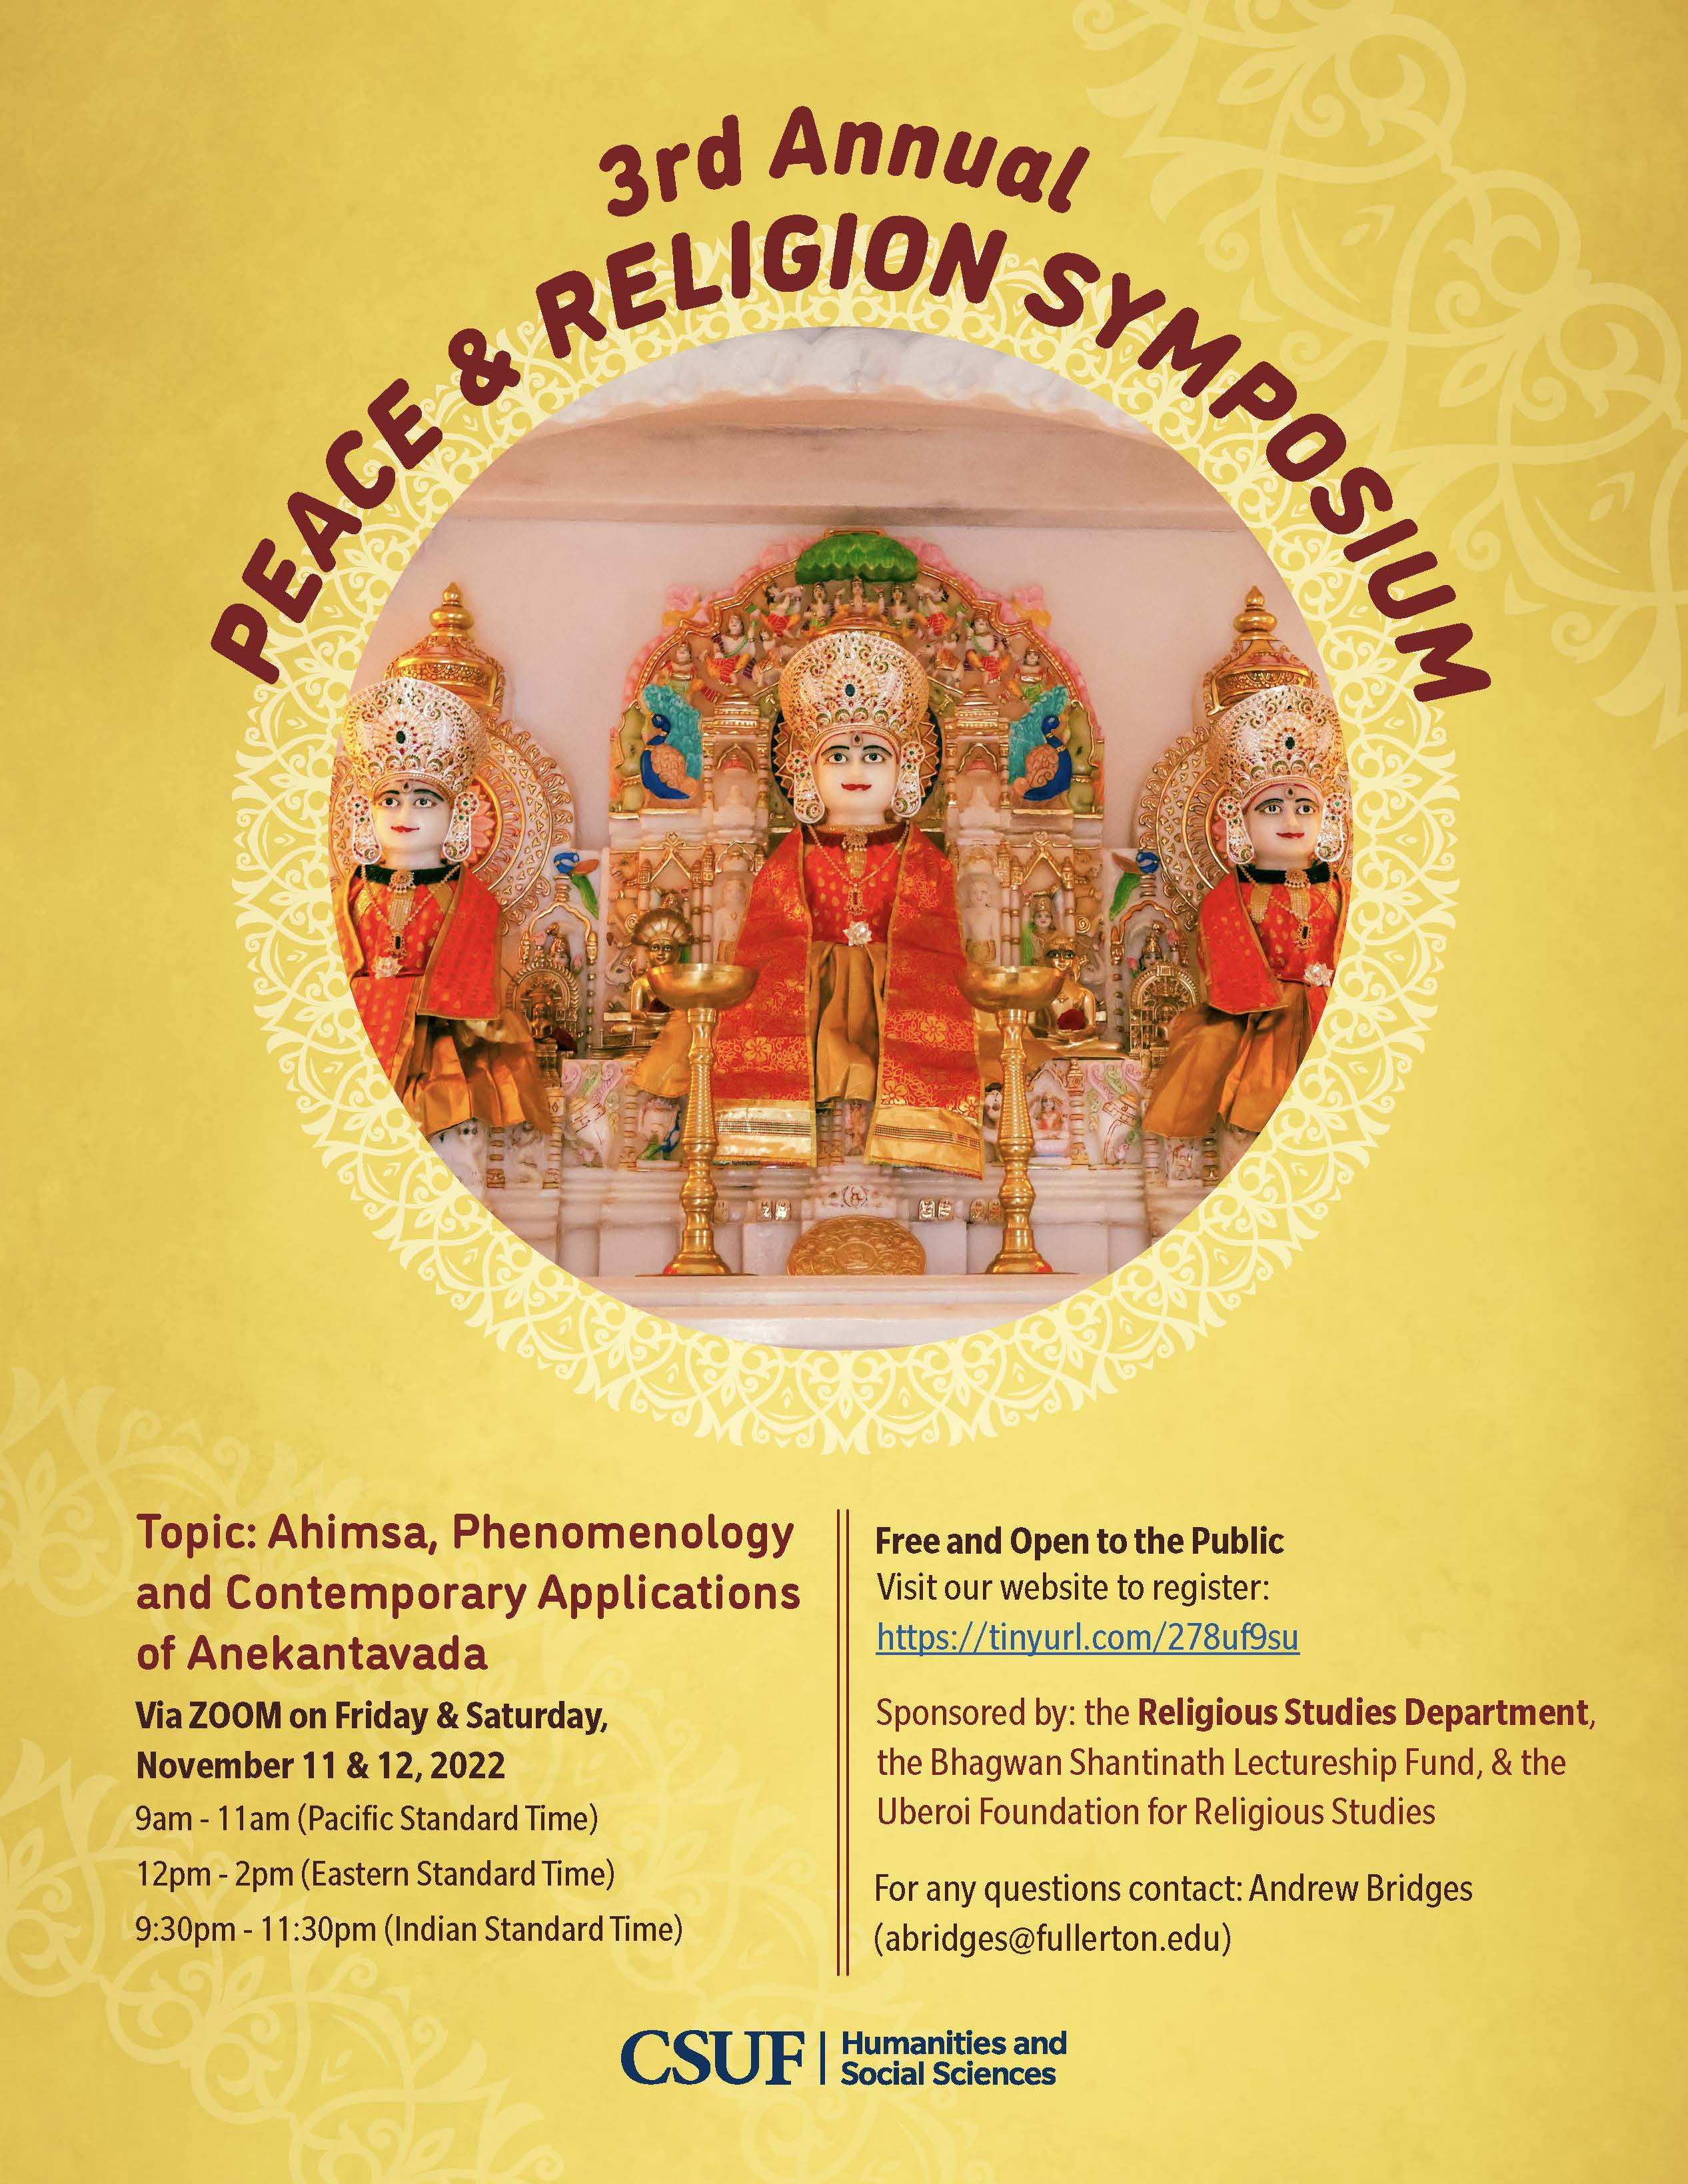 3rd ANNUAL PEACE & RELIGION SYMPOSIUM